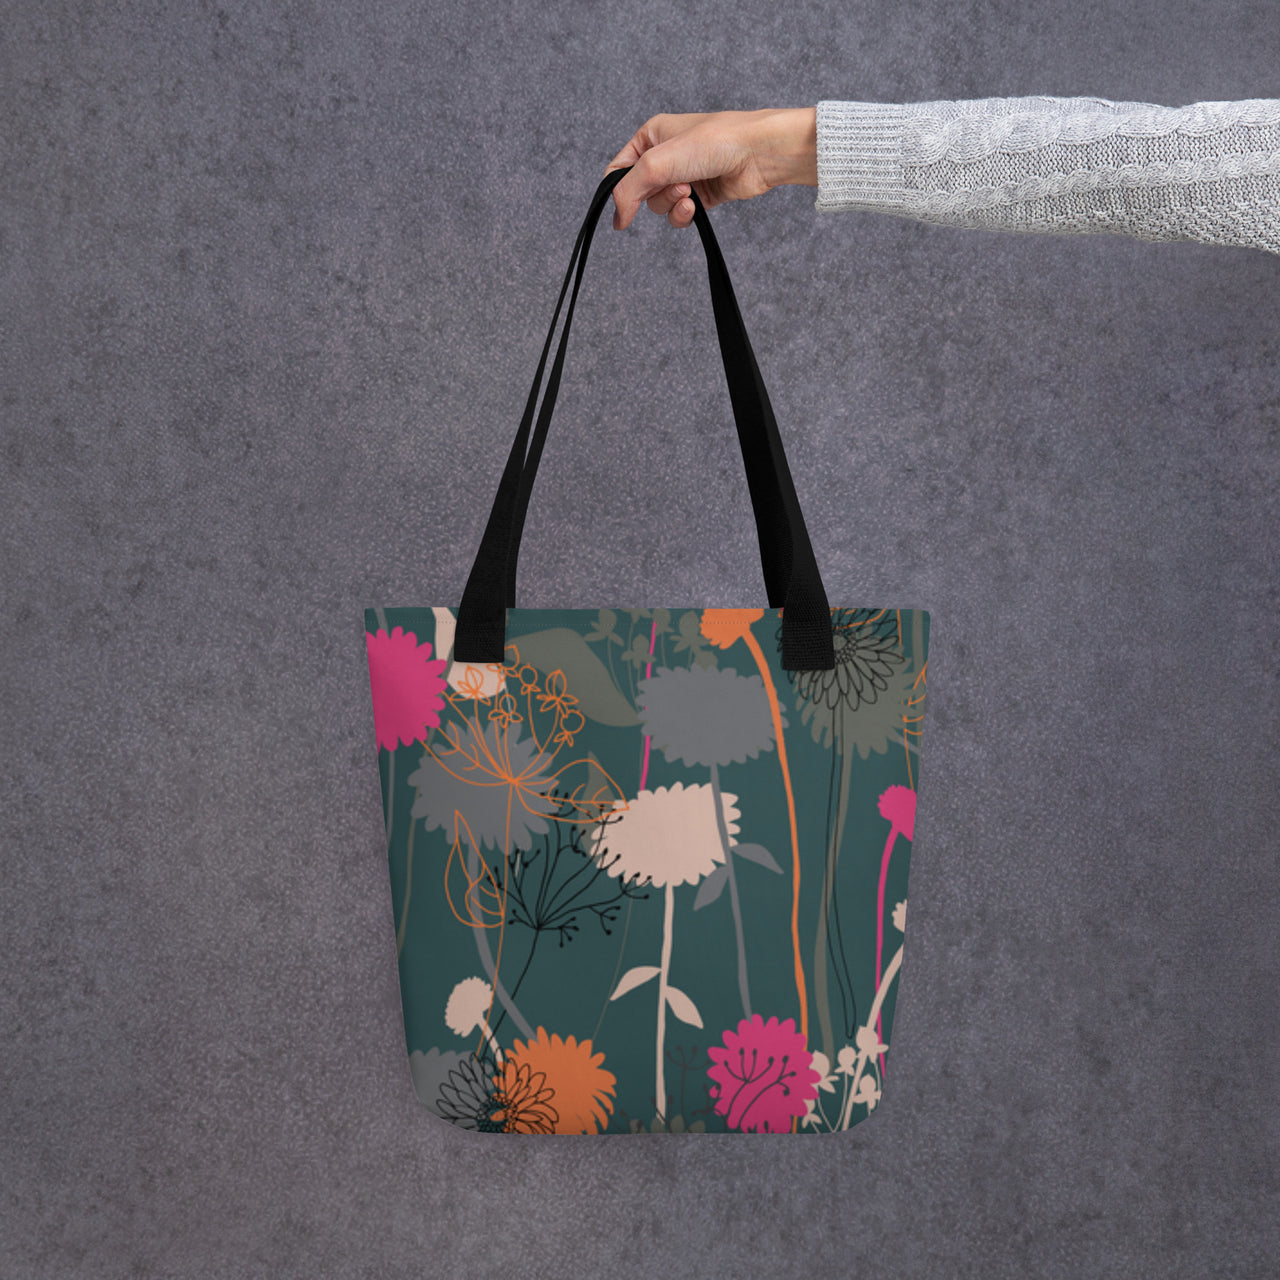 Spring Flowers - Tote bag